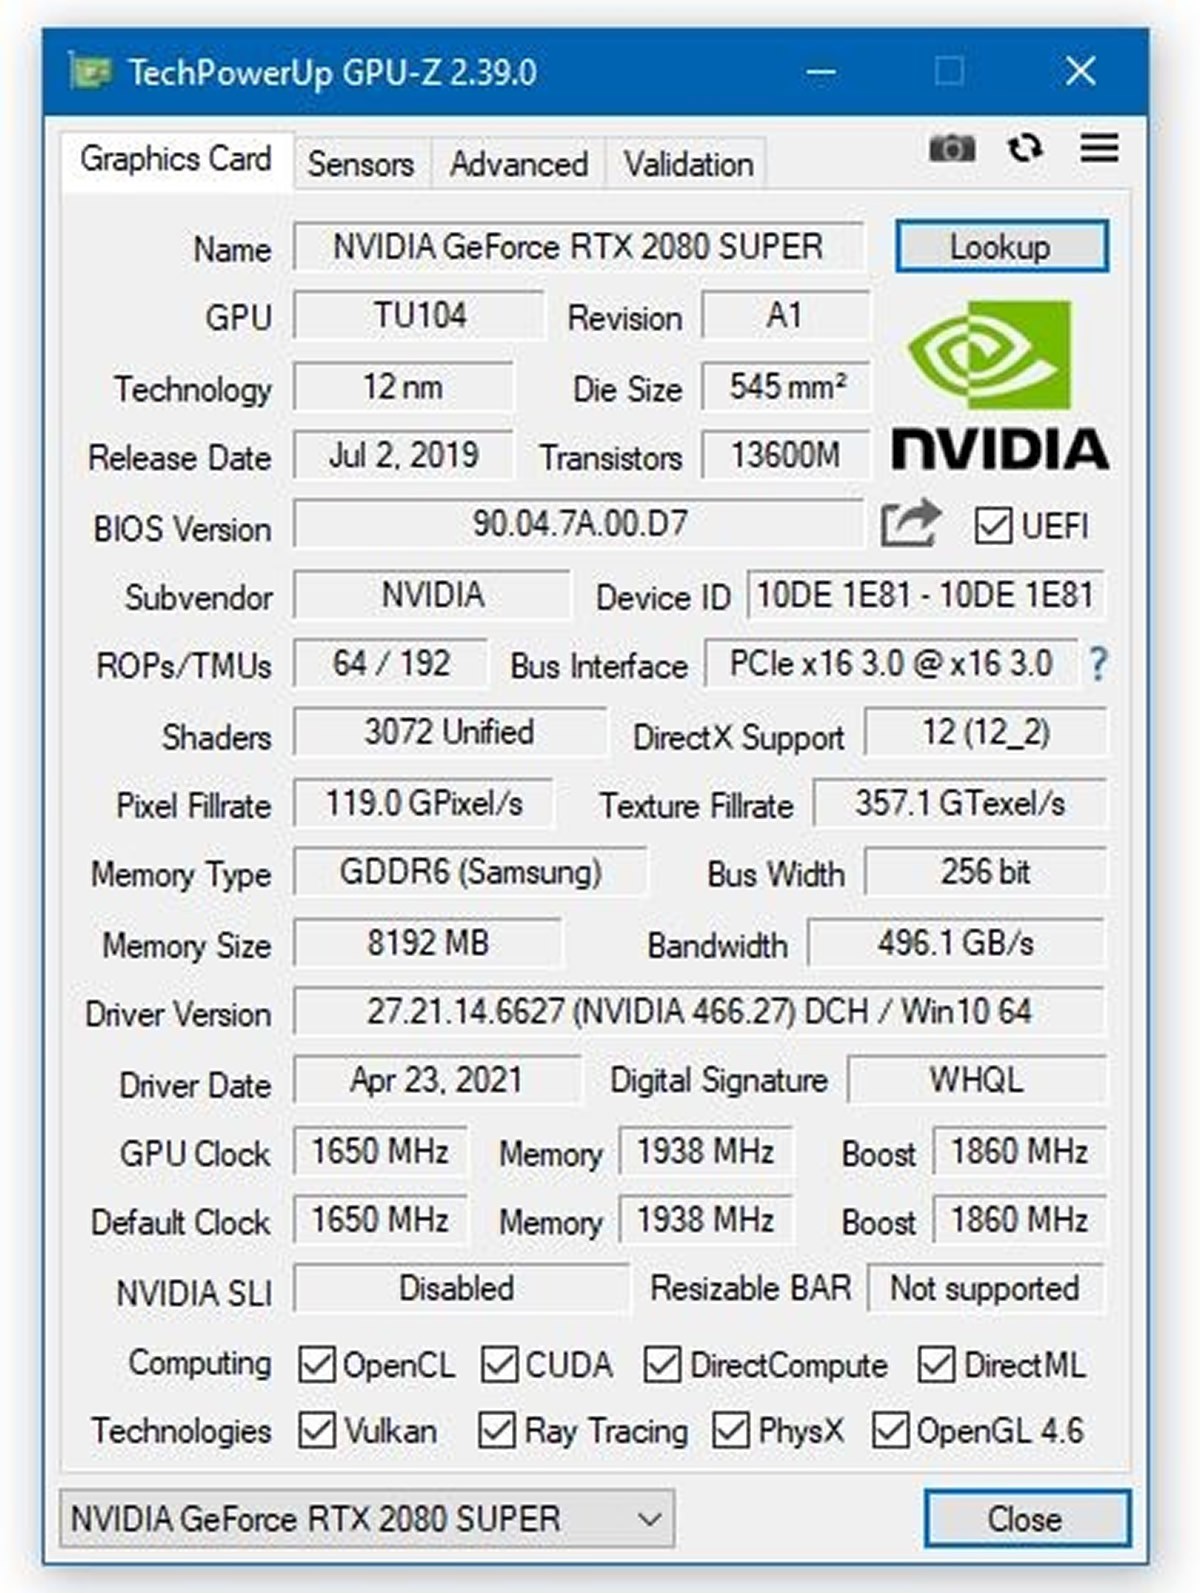 Le nouveau GPU-Z en version 2.39.0 est disponible